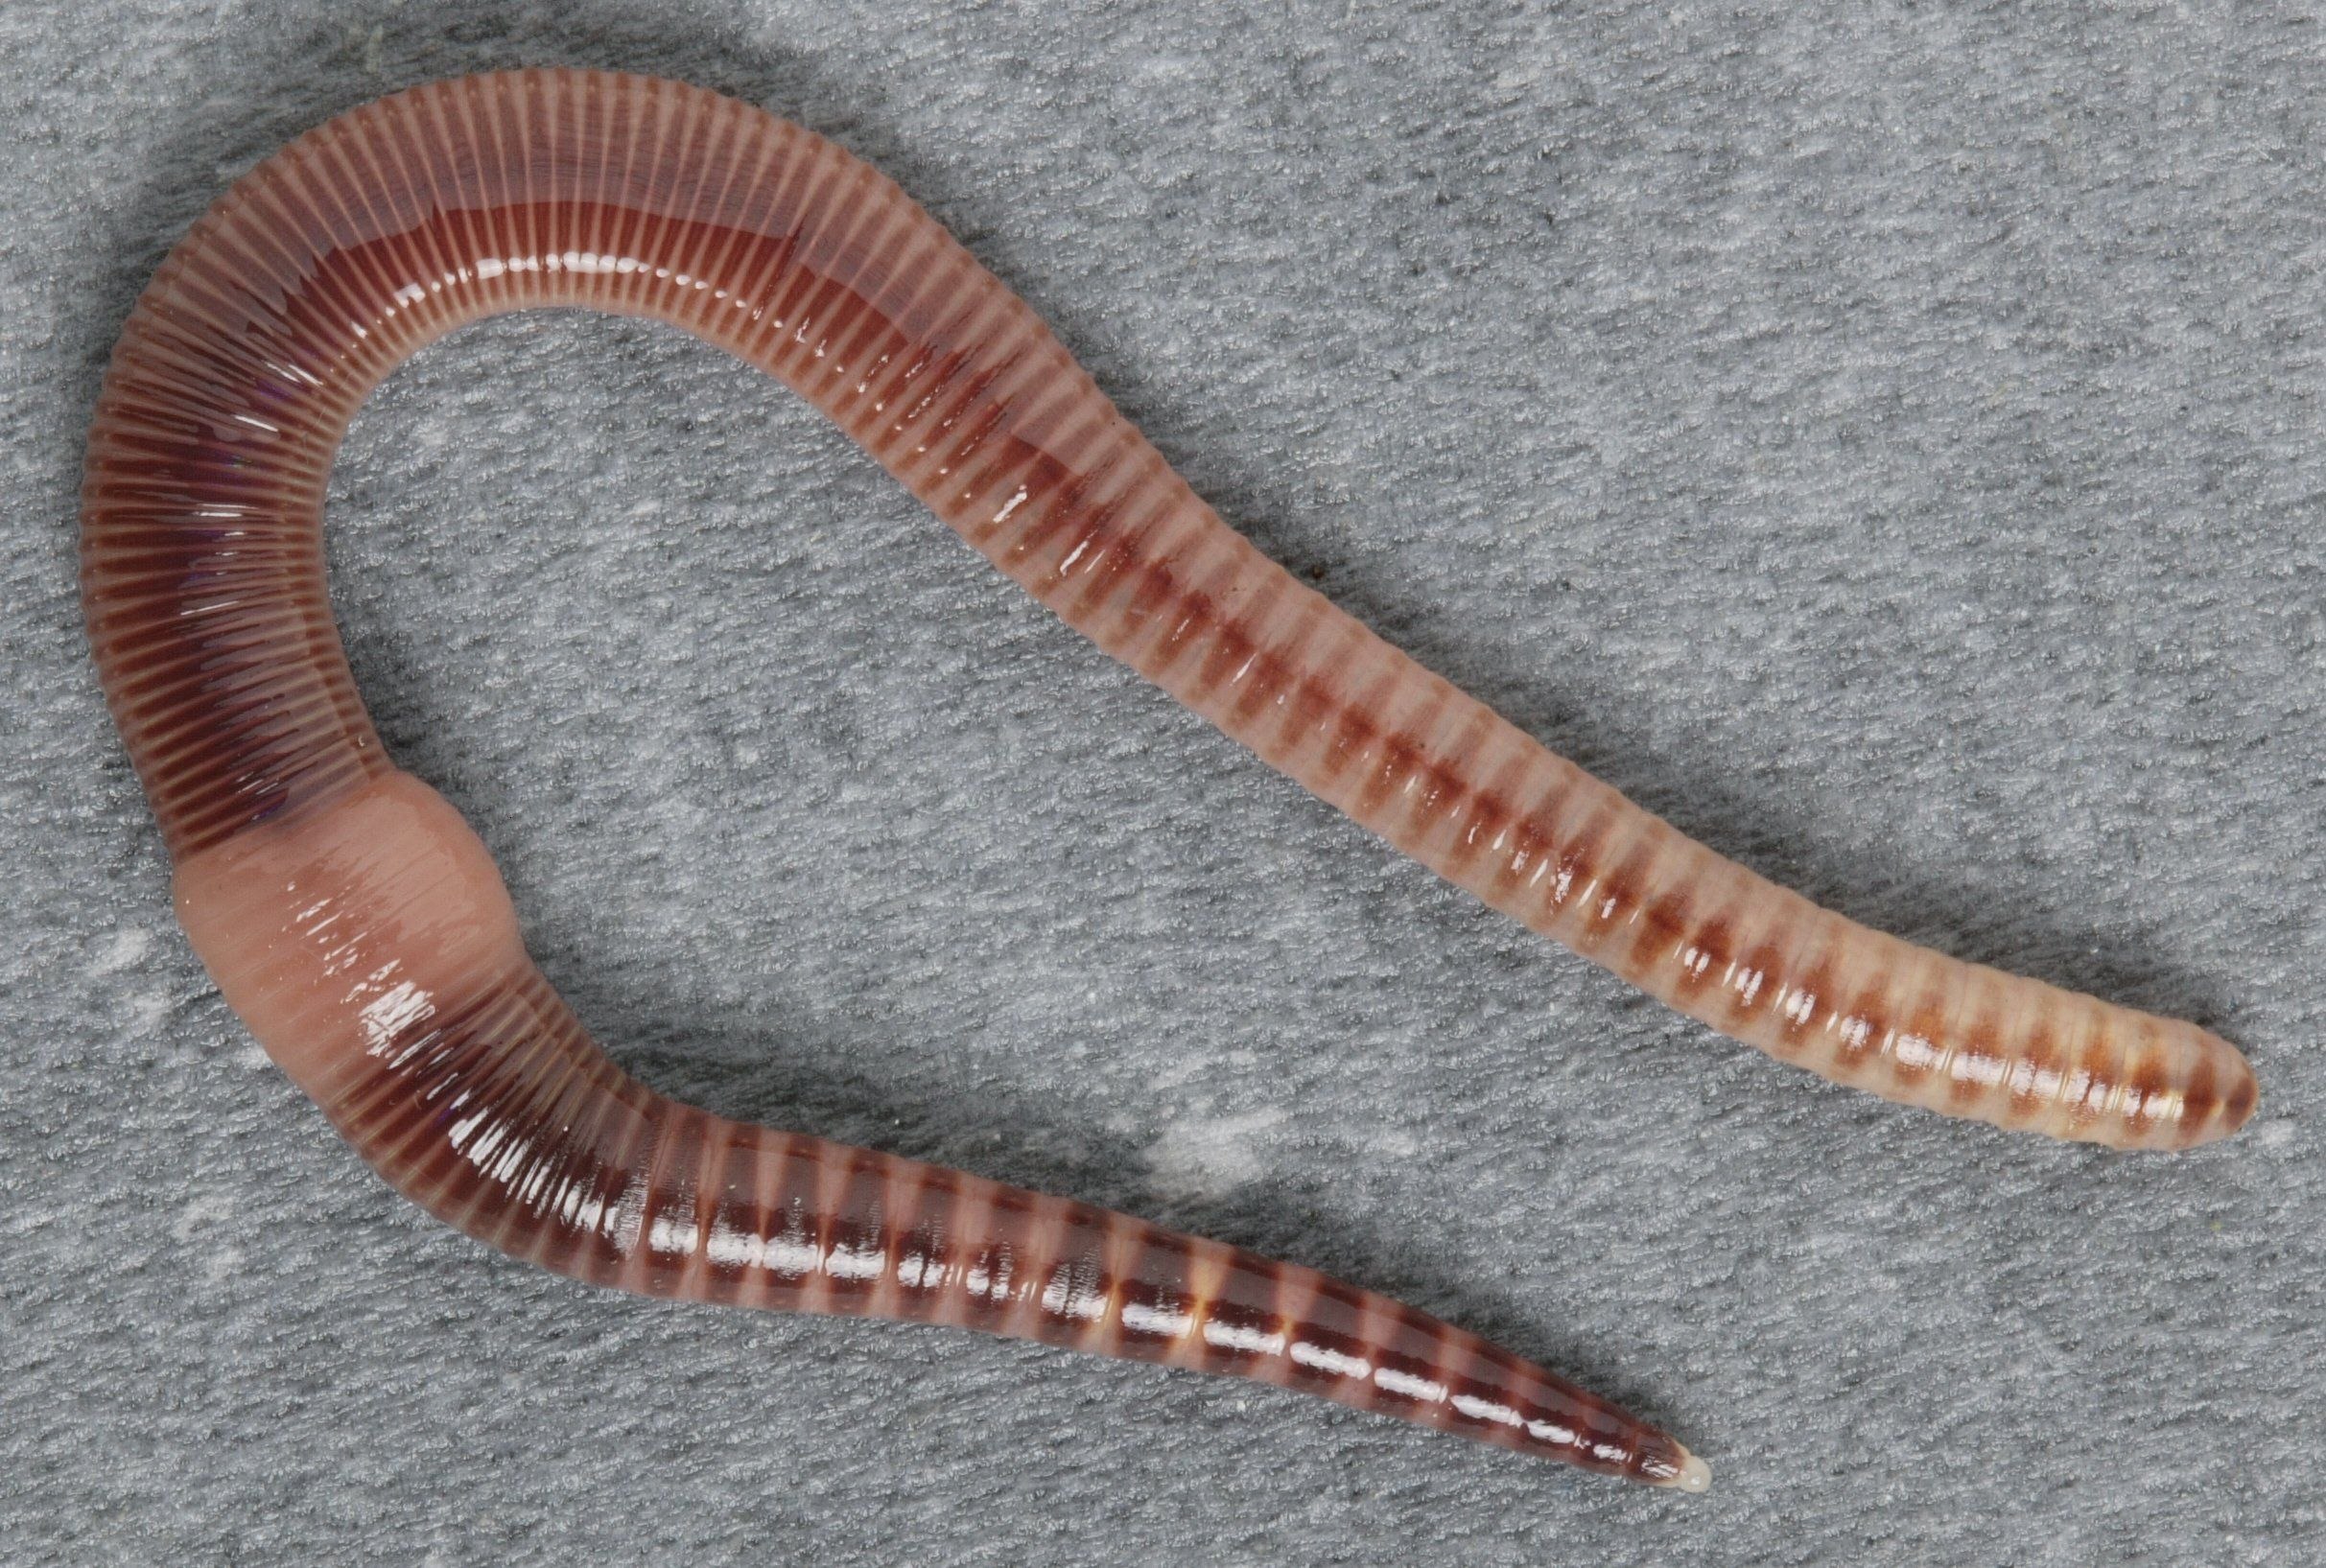 Дождевой червь тип животного. Малошетниковфй крльчатые черви. Малощетинковые кольчатые черви. Малощетинковые черви (дождевой червь). Oligochaeta (Малощетинковые черви).